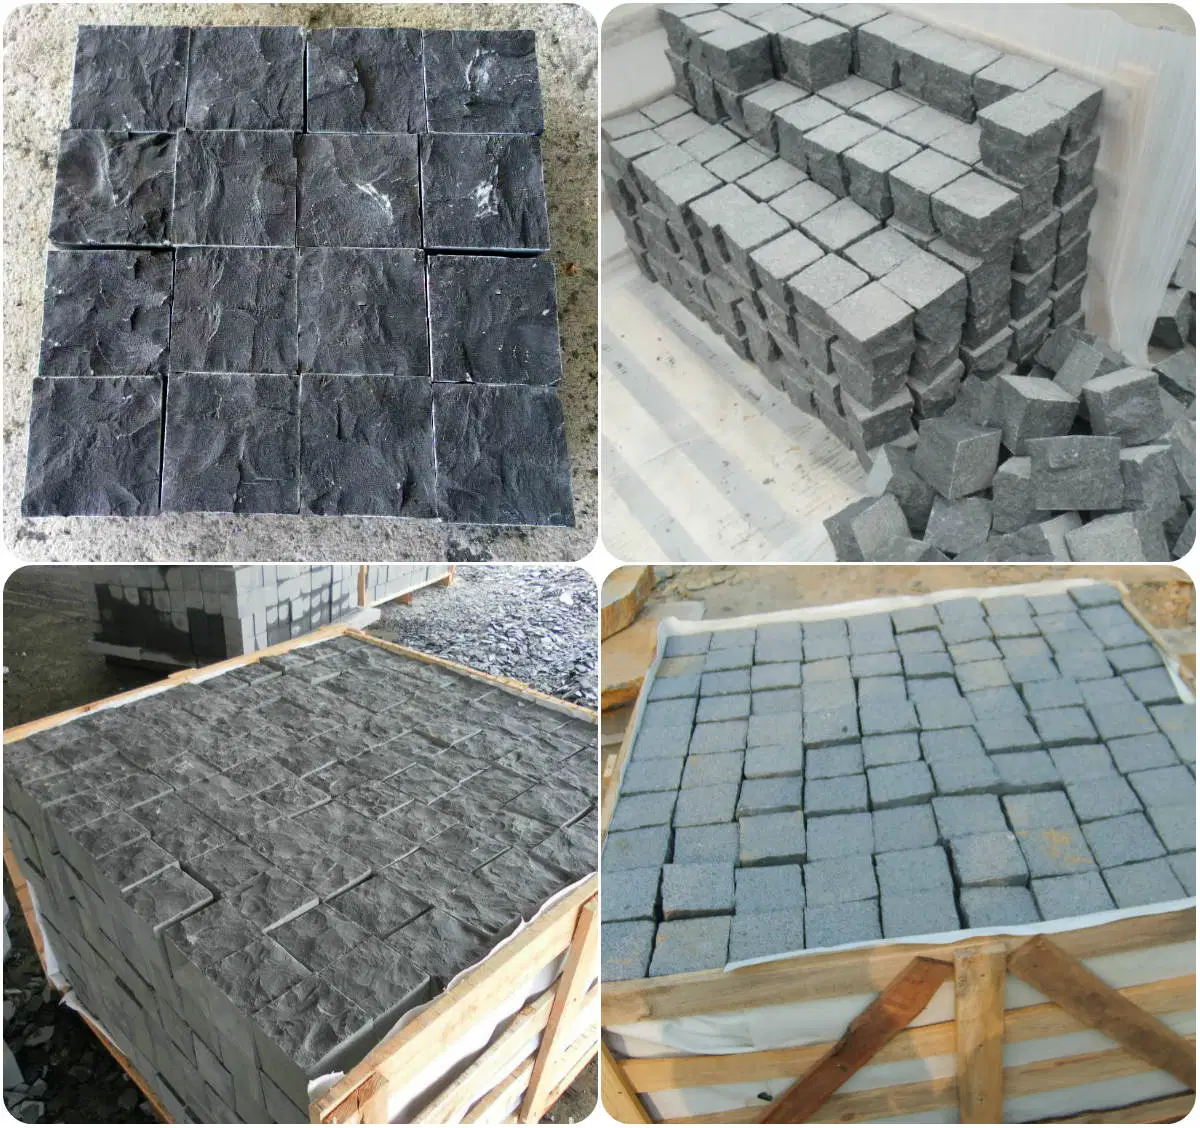 أسود طبيعي alt/Slate/مقلوب/الحجر الرملي/Porphyr/Granite Stone الرصيف/ المكعبات/Blind/Paver Stone/الرصف Stone